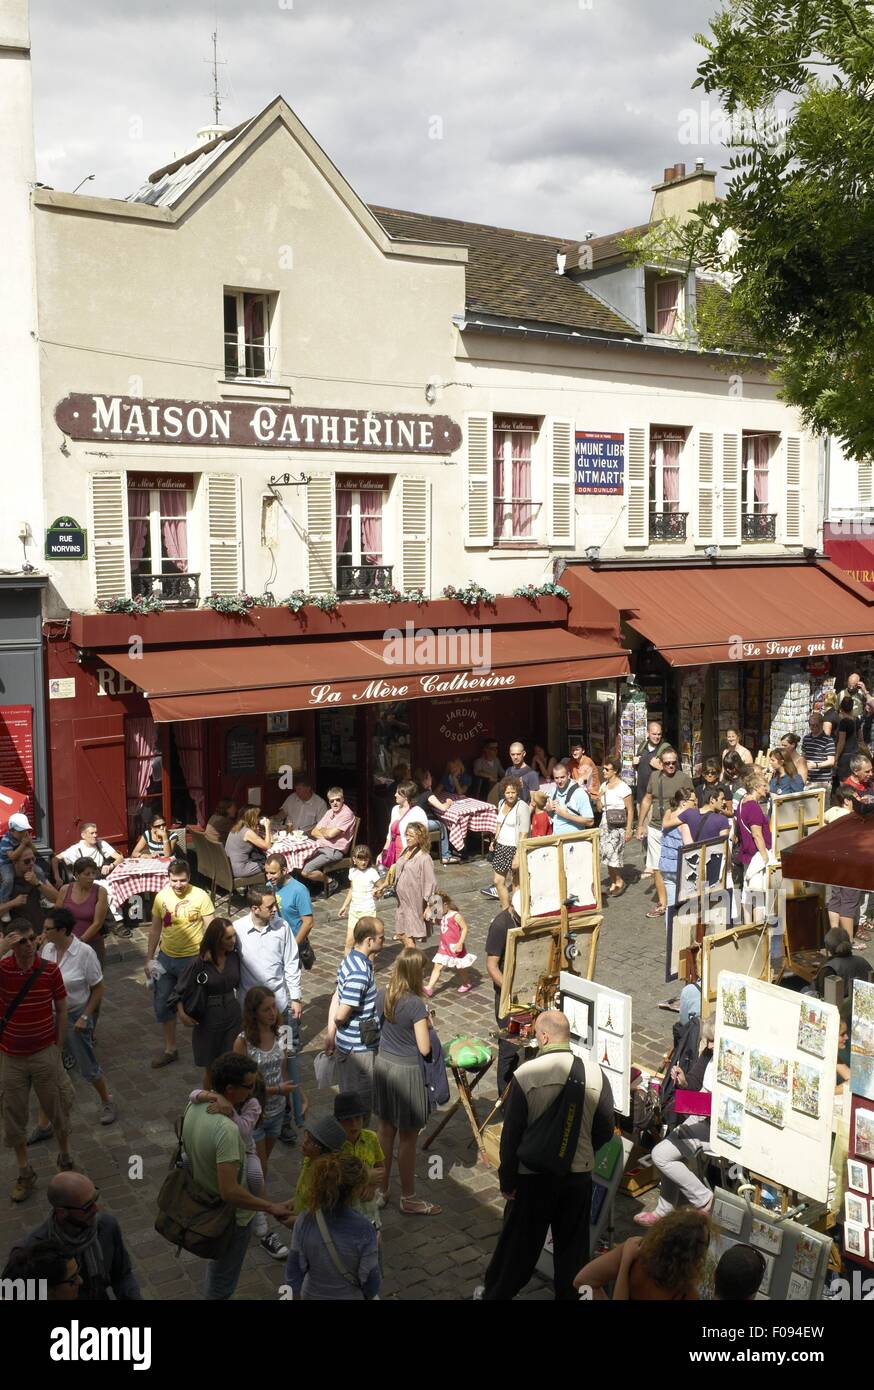 Les gens au marché dans Montmartre, Paris, France Banque D'Images